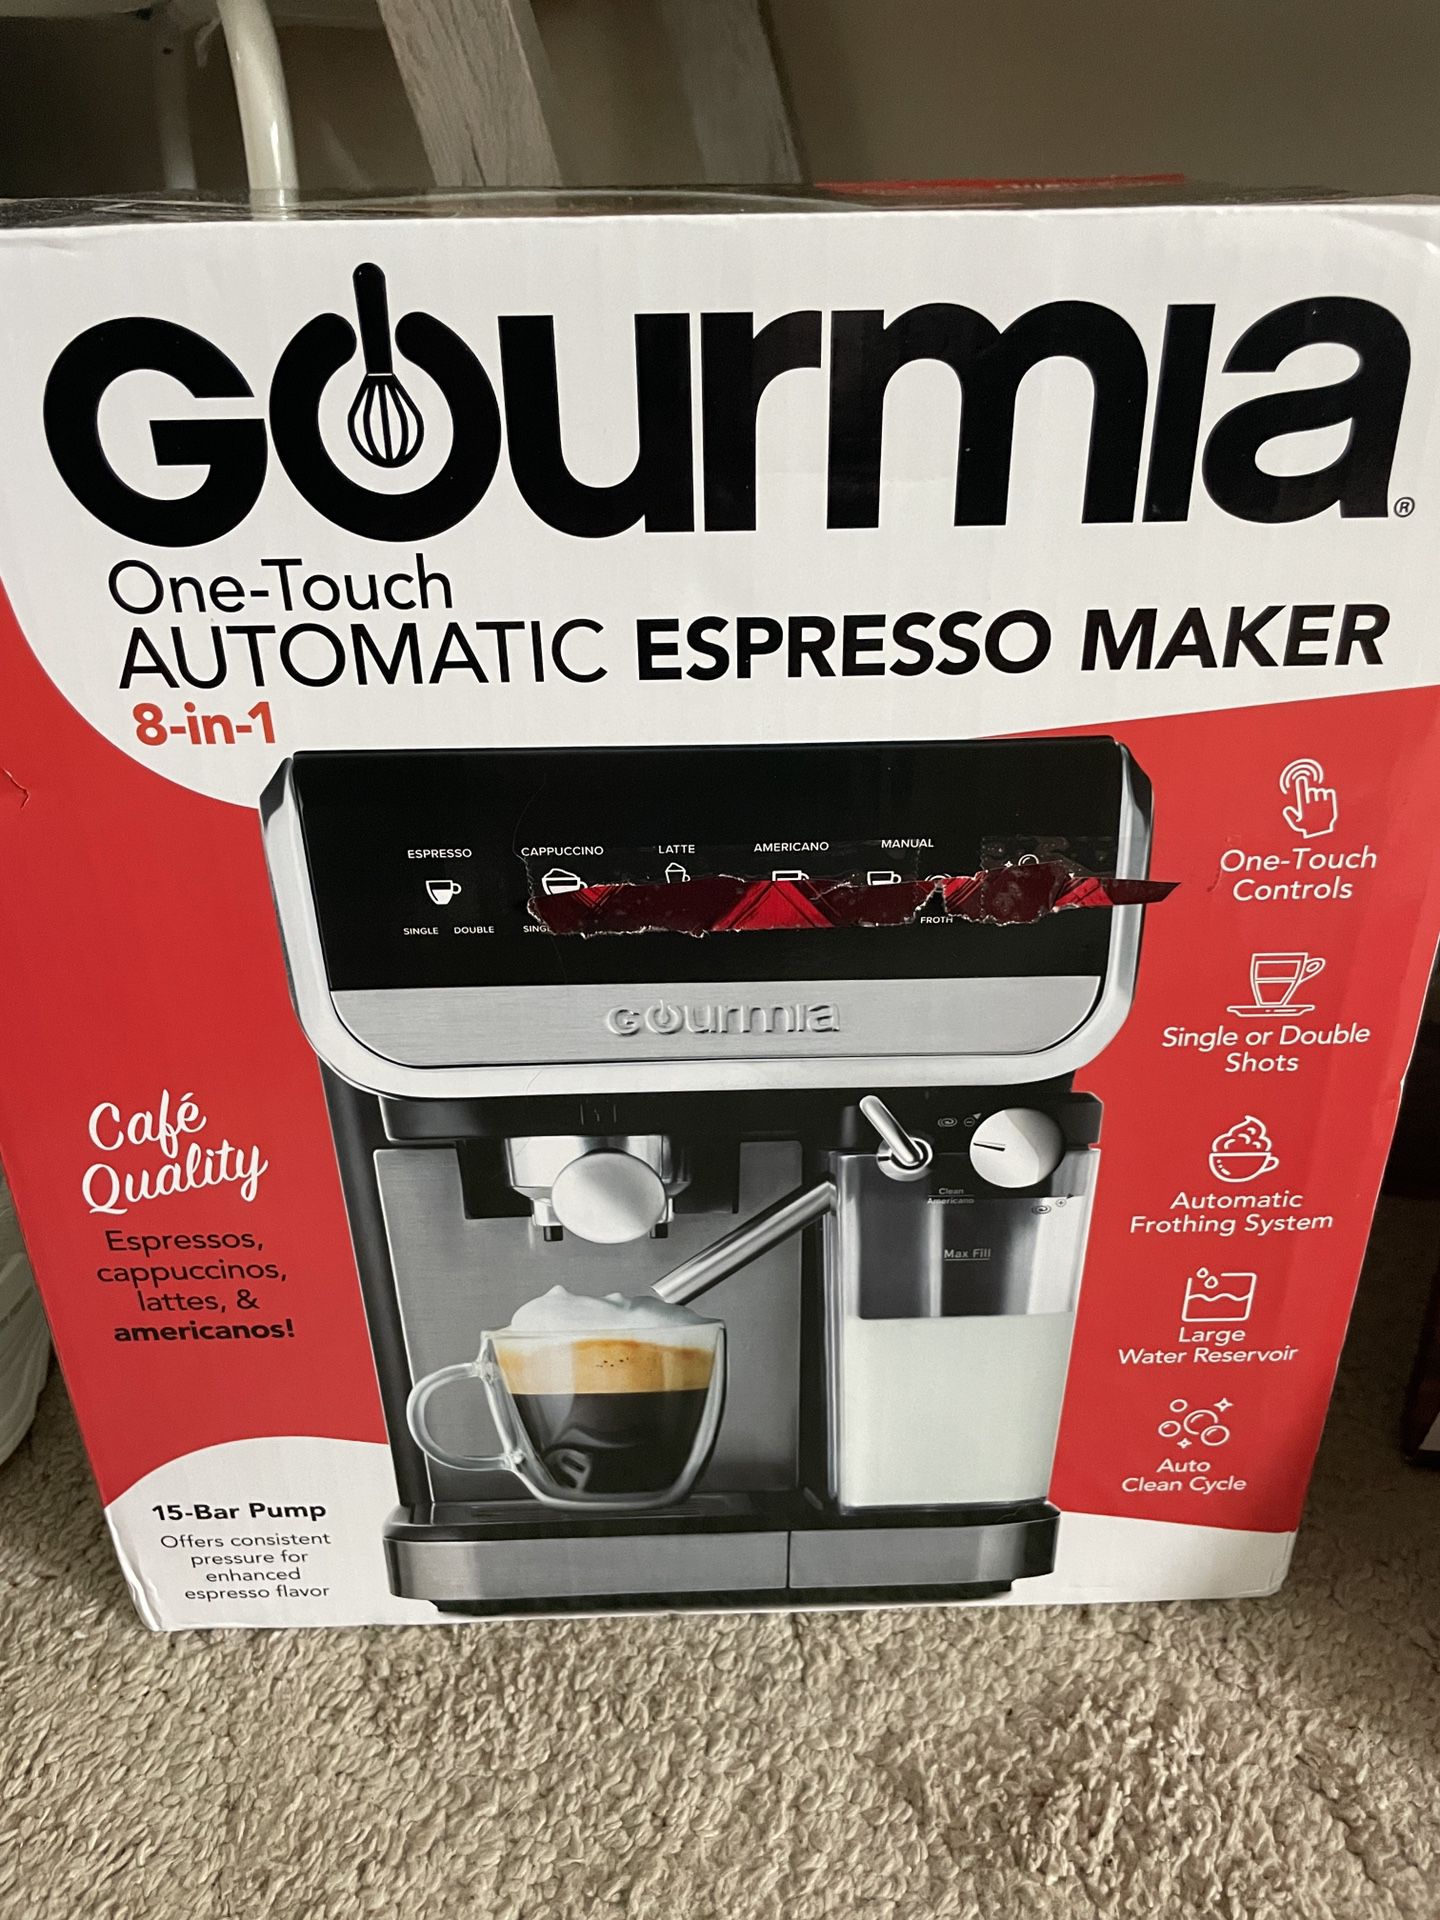 Espresso Maker